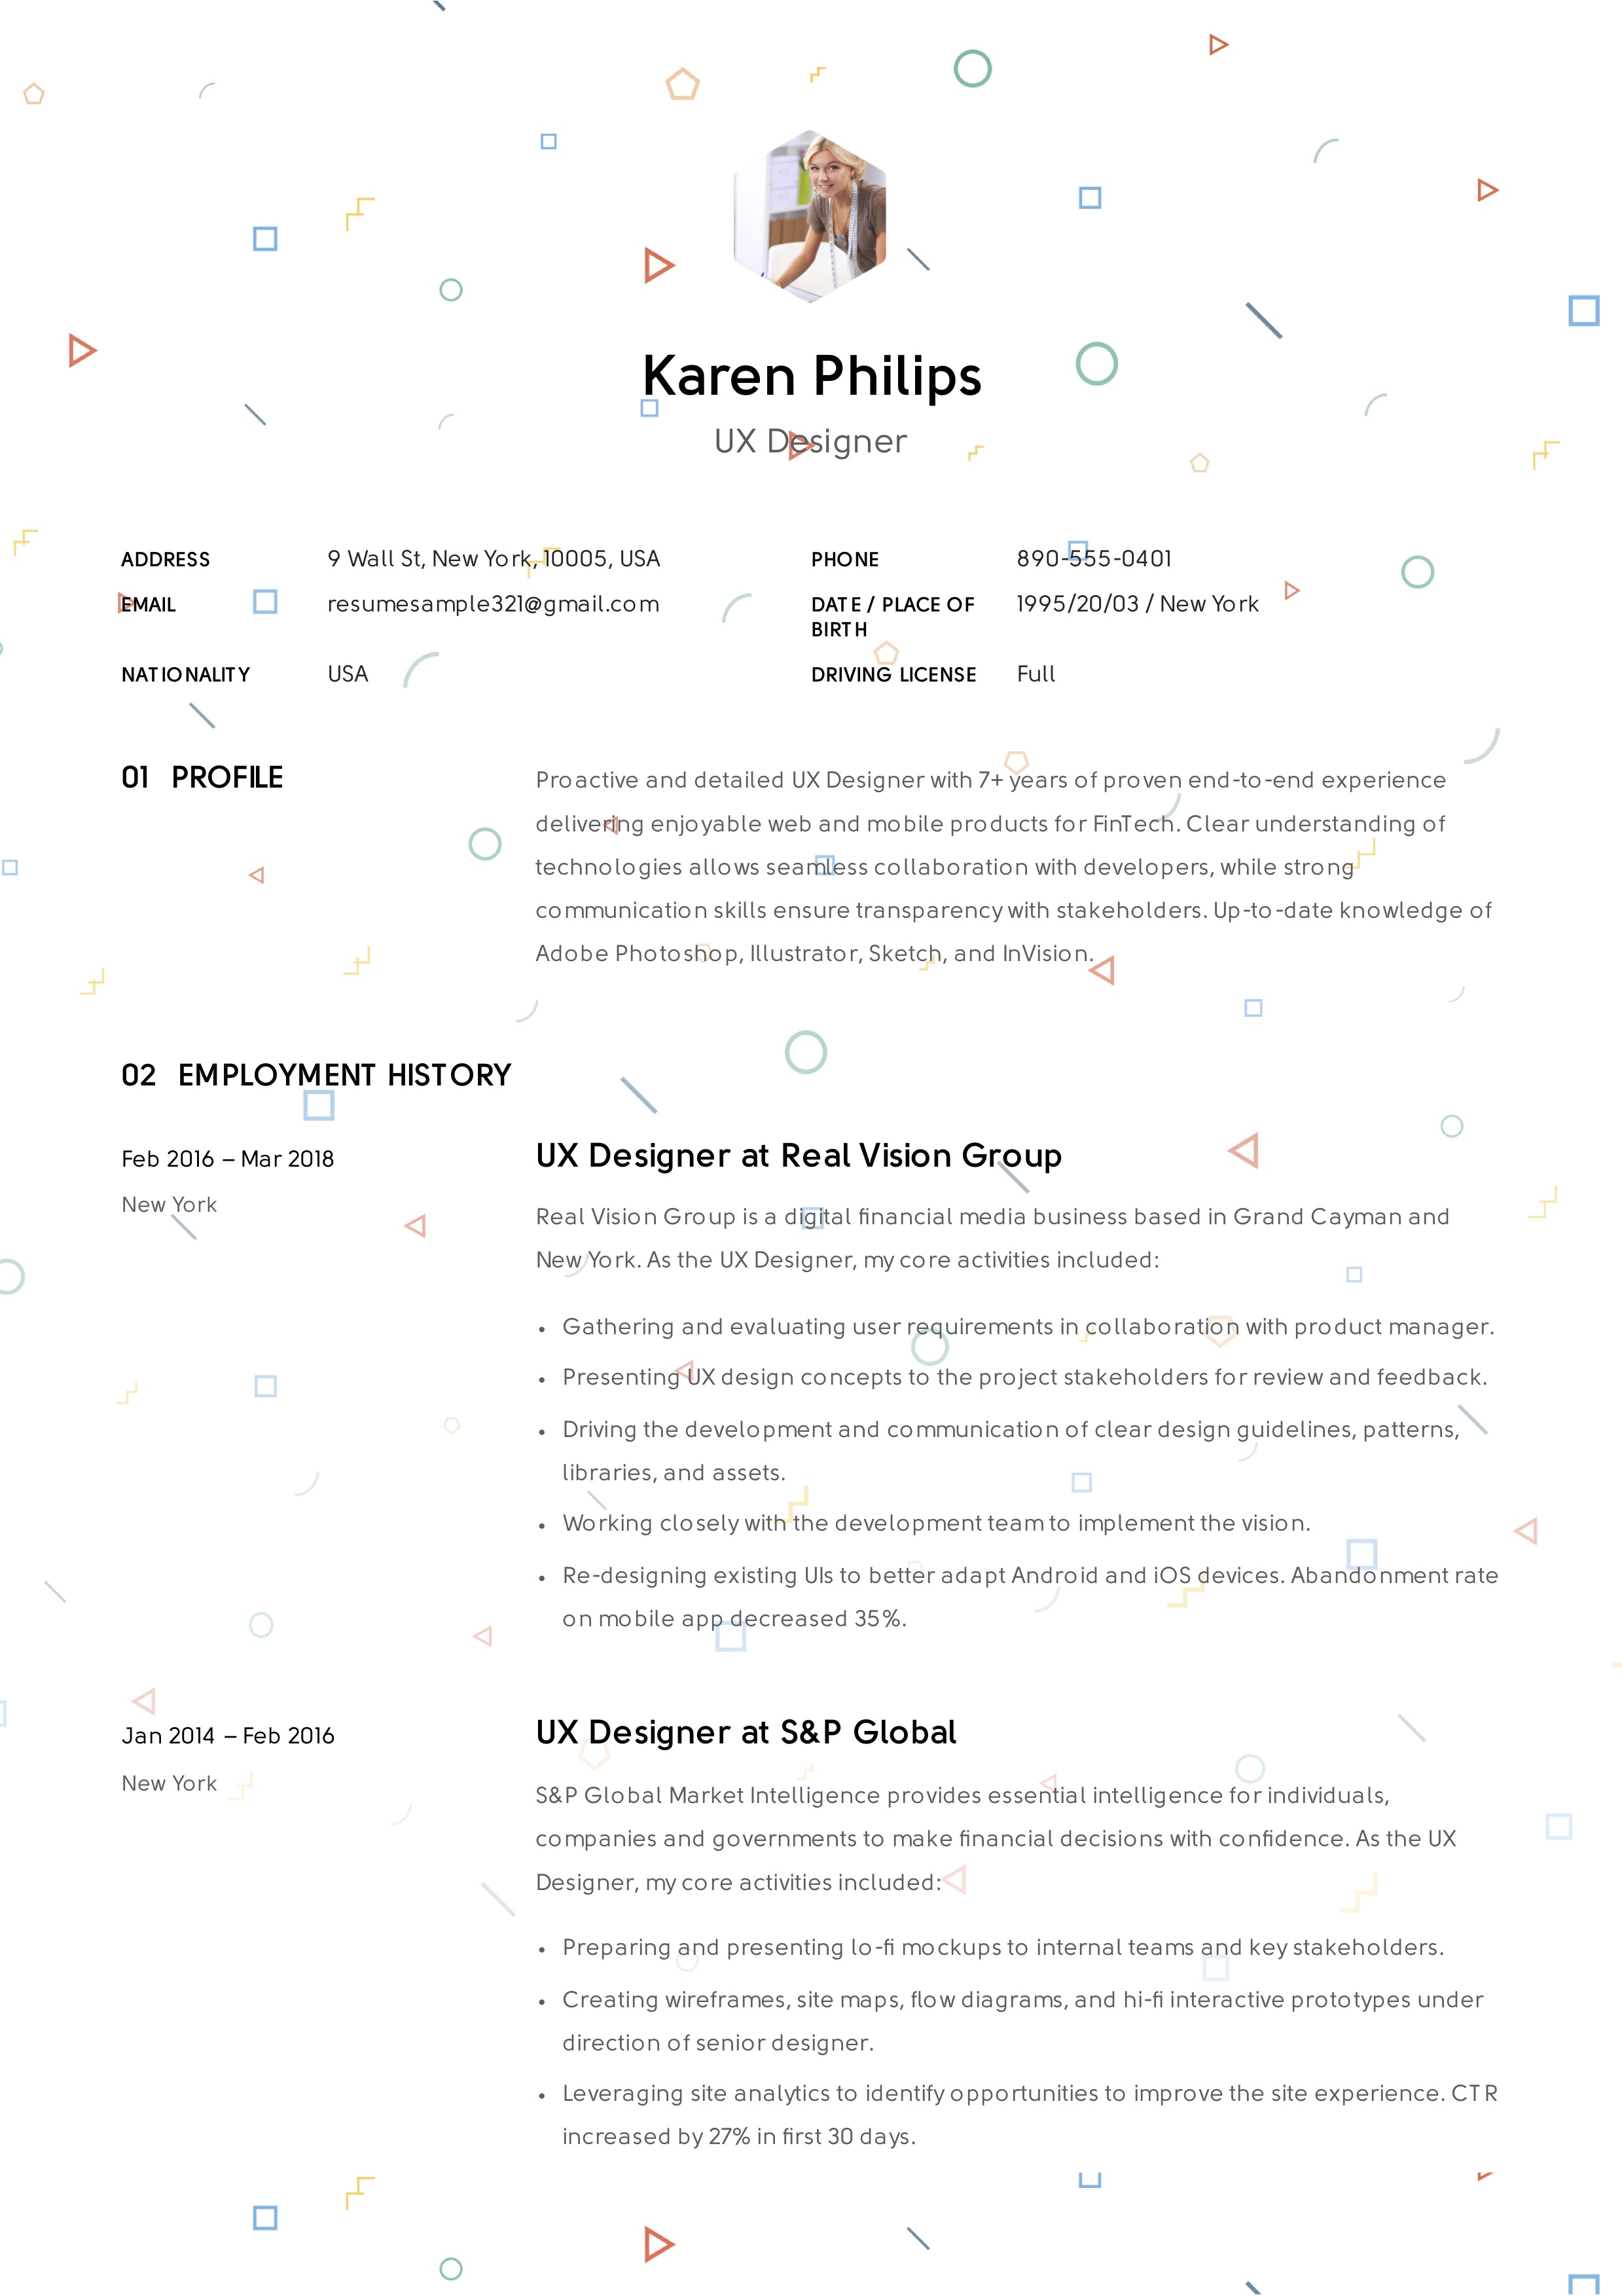 UX Designer Resume Sample – Karen Philips (7)